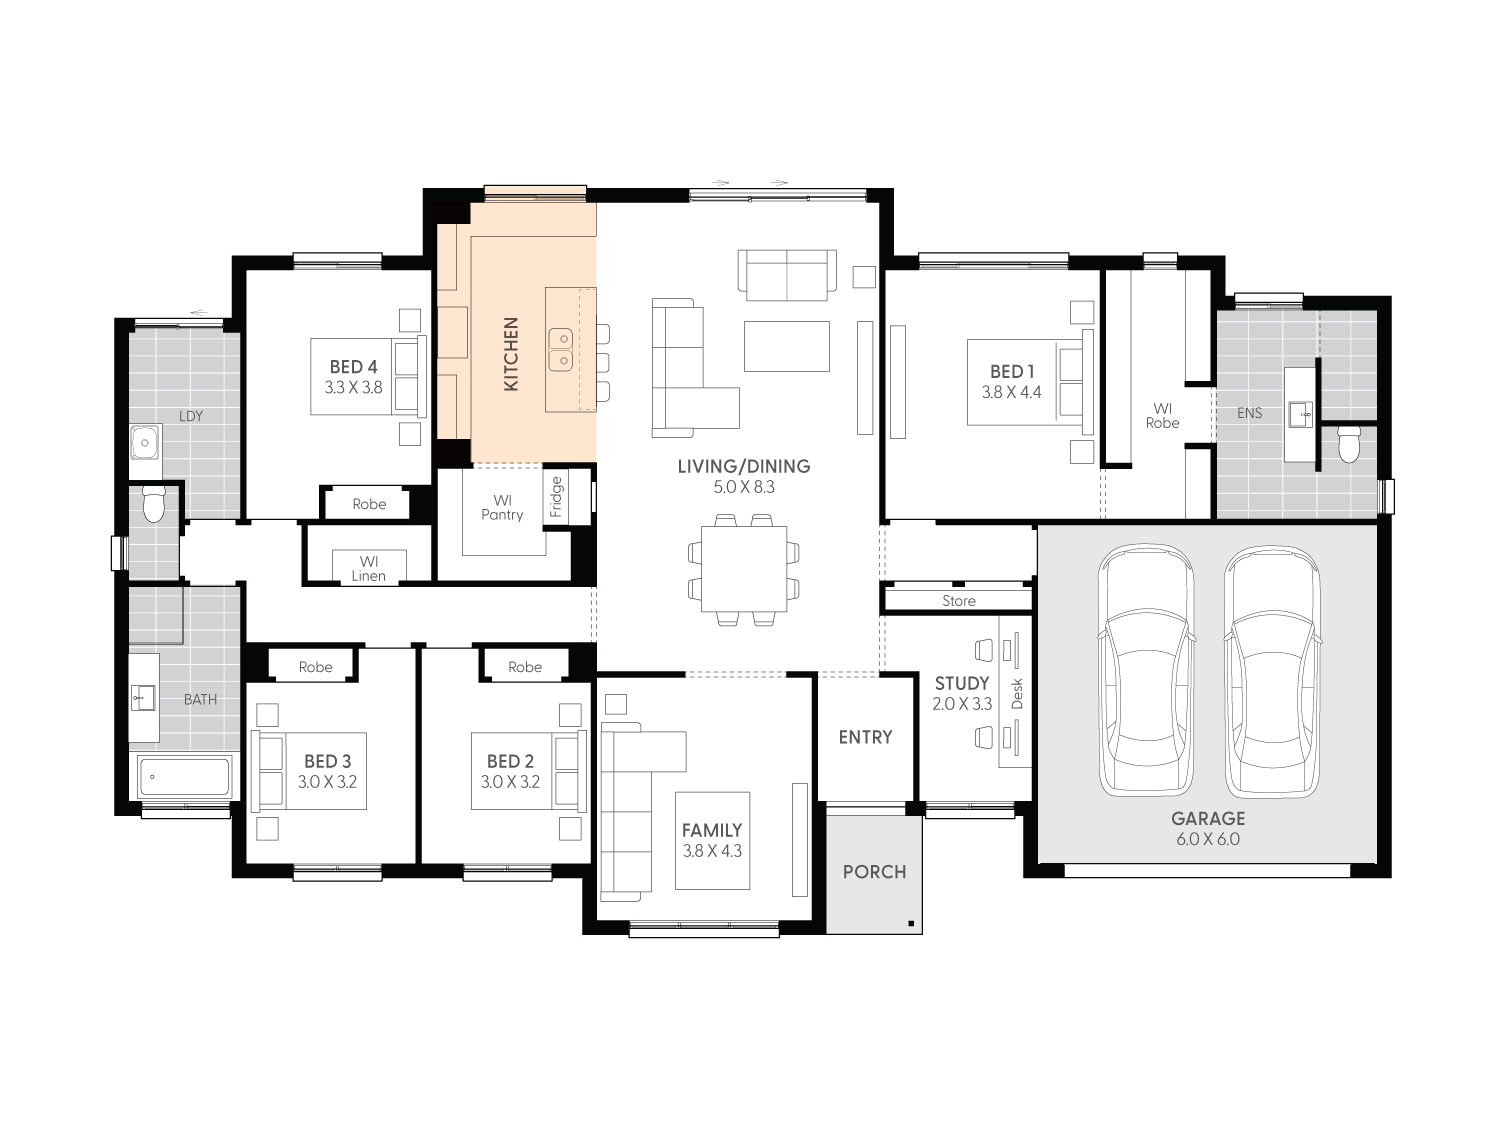 Lyndhurst27-floor-plan-ALTERNATE-KITCHEN-LAYOUT-LHS_1.jpg 